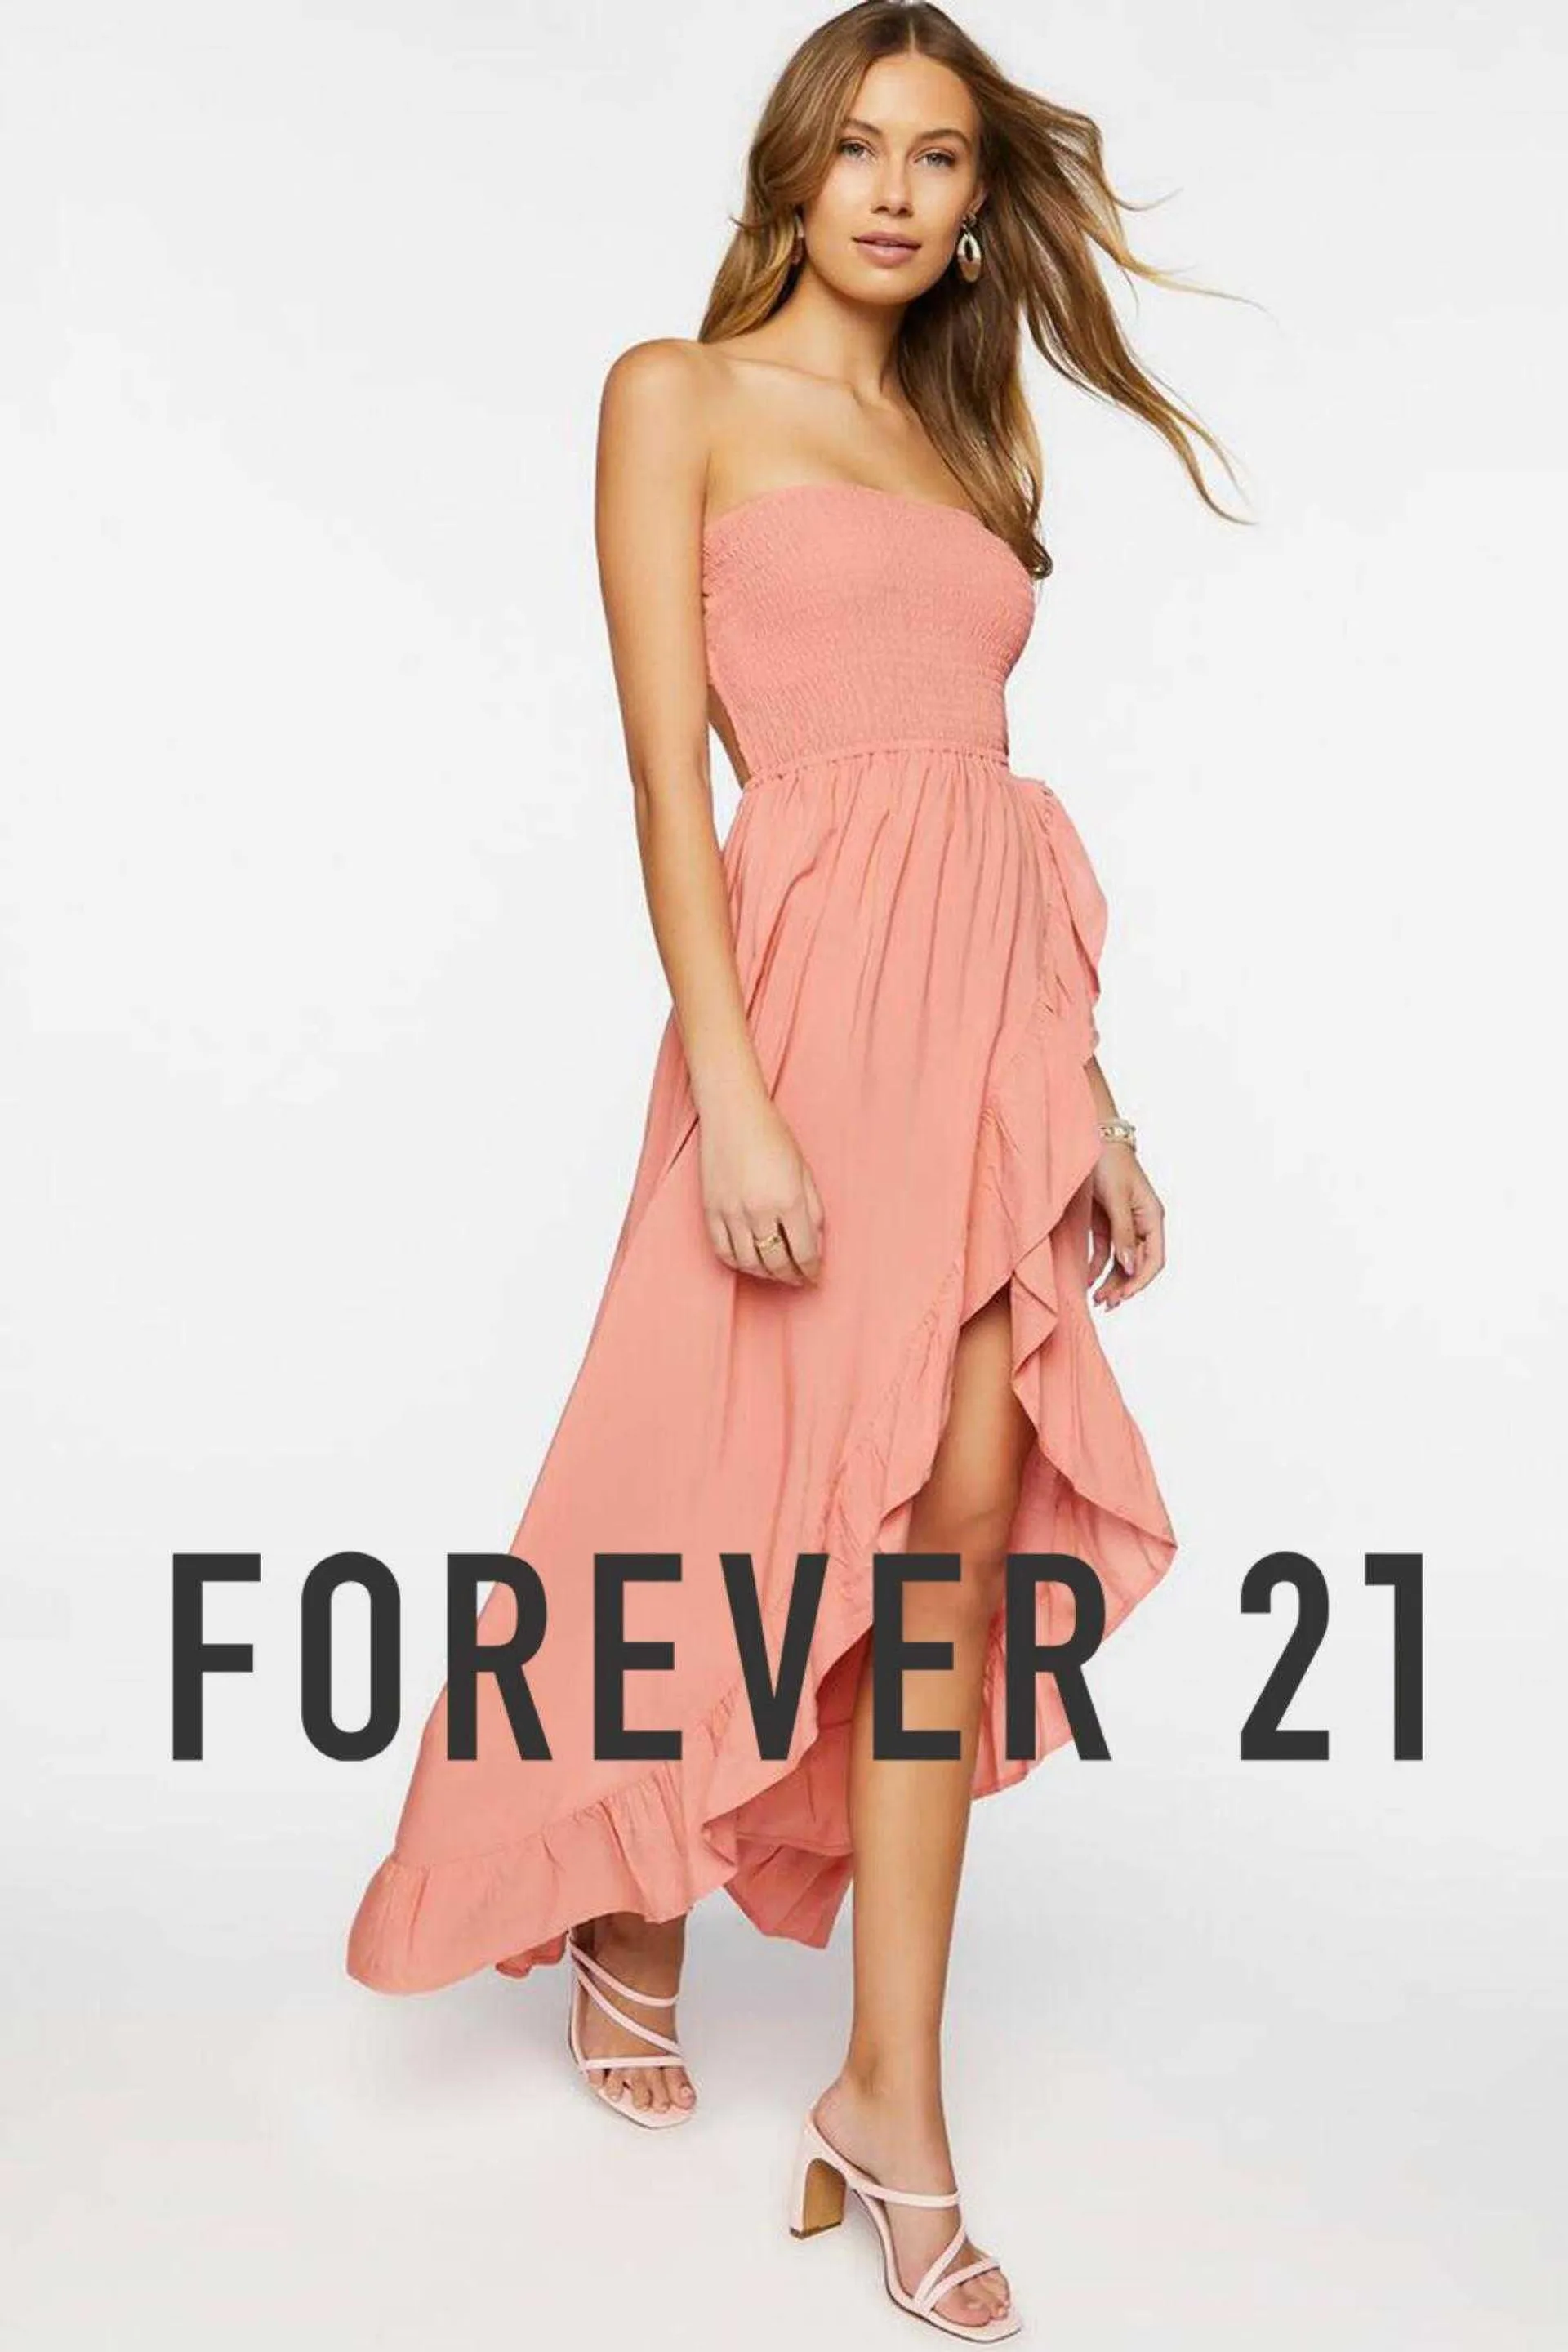 Forever 21 Catalog - 1